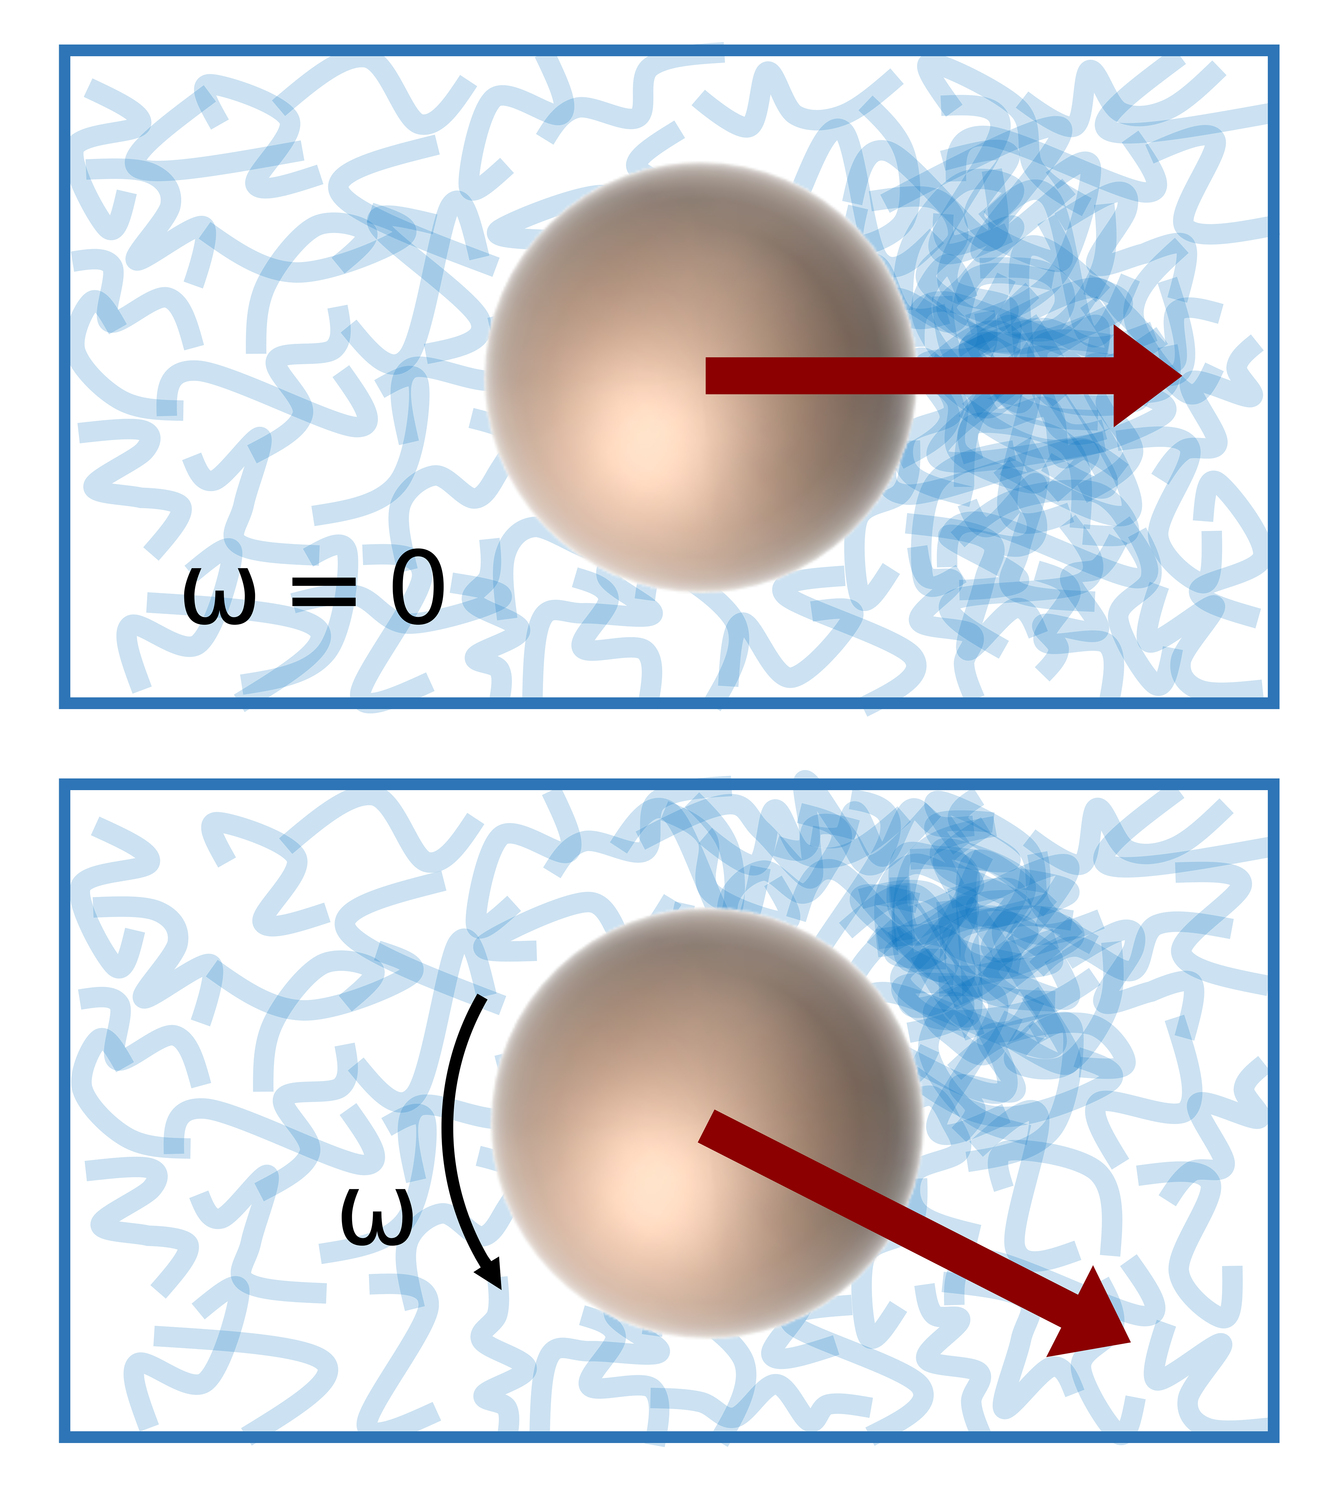 Die Ursache des Magnus-Effekts ist eine lokale Kompression der Struktur der viskoelastischen Flüssigkeit (blau), die sich bei Drehung des Teilchens zur Seite verlagert und eine Kraft senkrecht zur Bewegungsrichtung erzeugt.